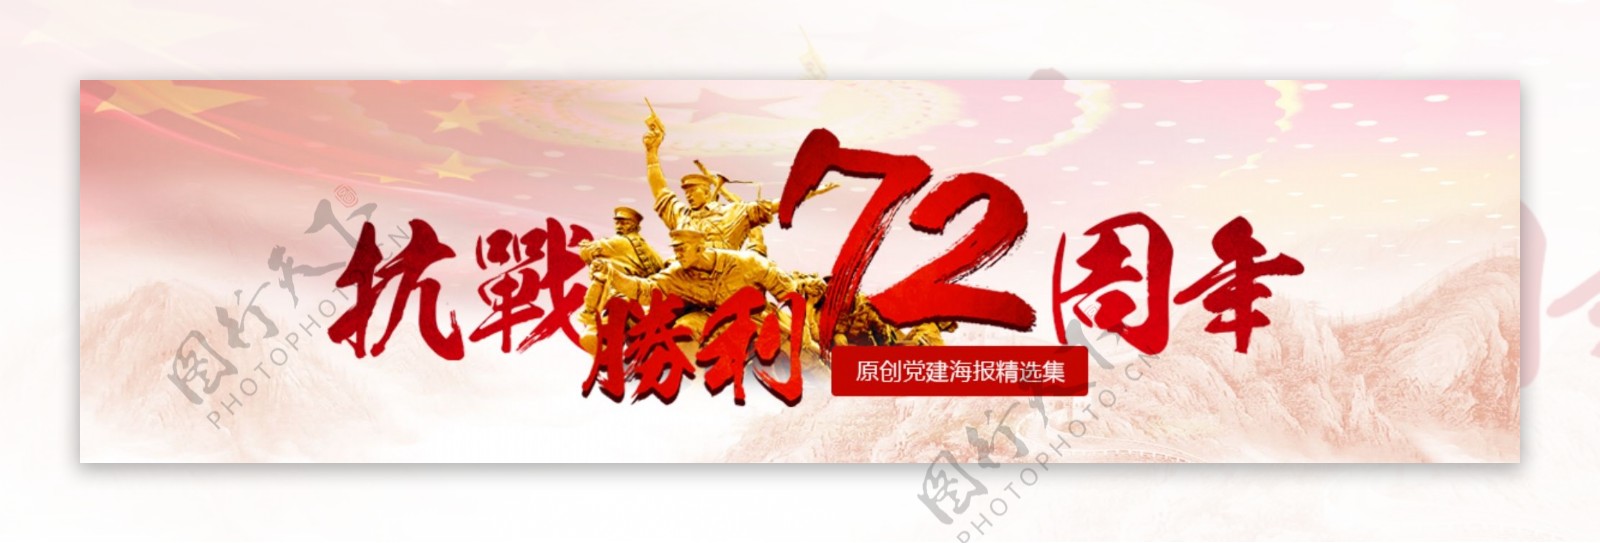 抗战胜利72周年banner设计